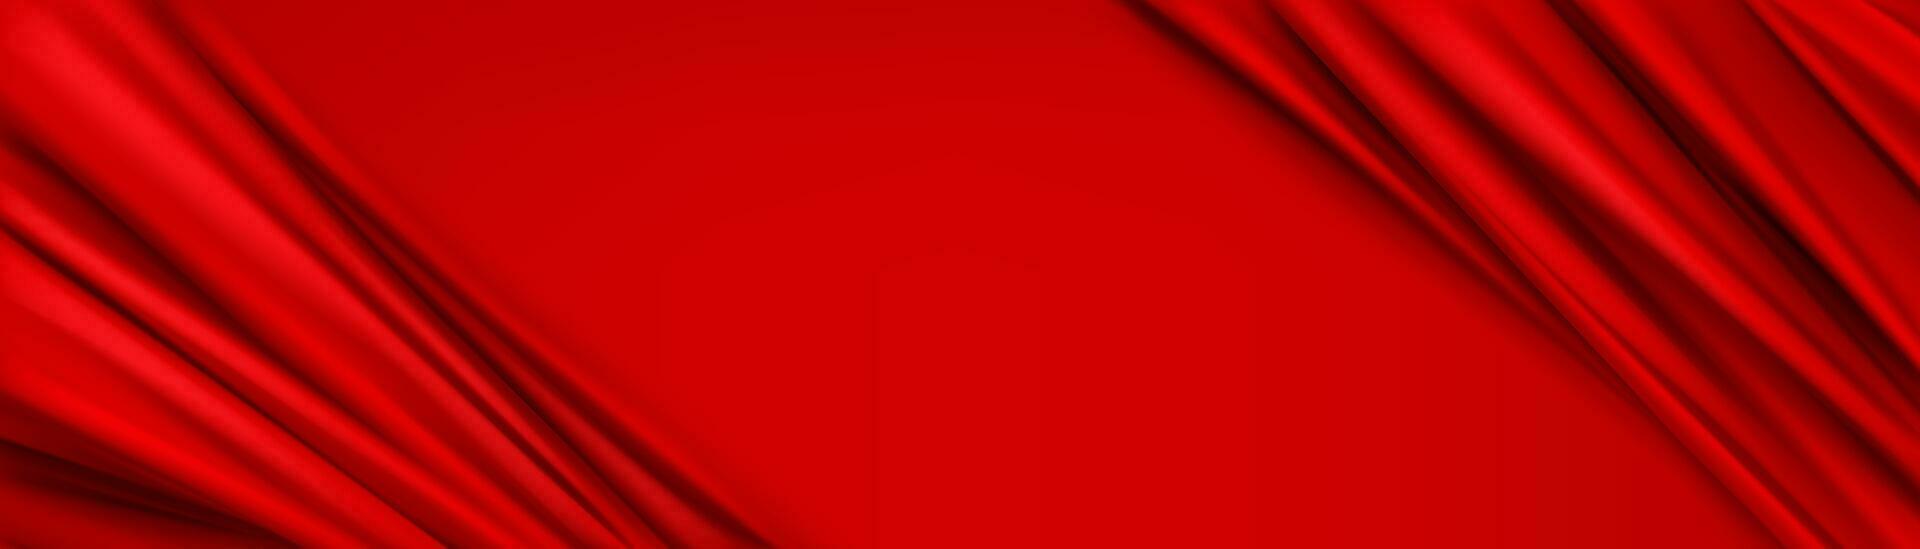 abstrakt Hintergrund mit rot Seide Stoff Rahmen vektor